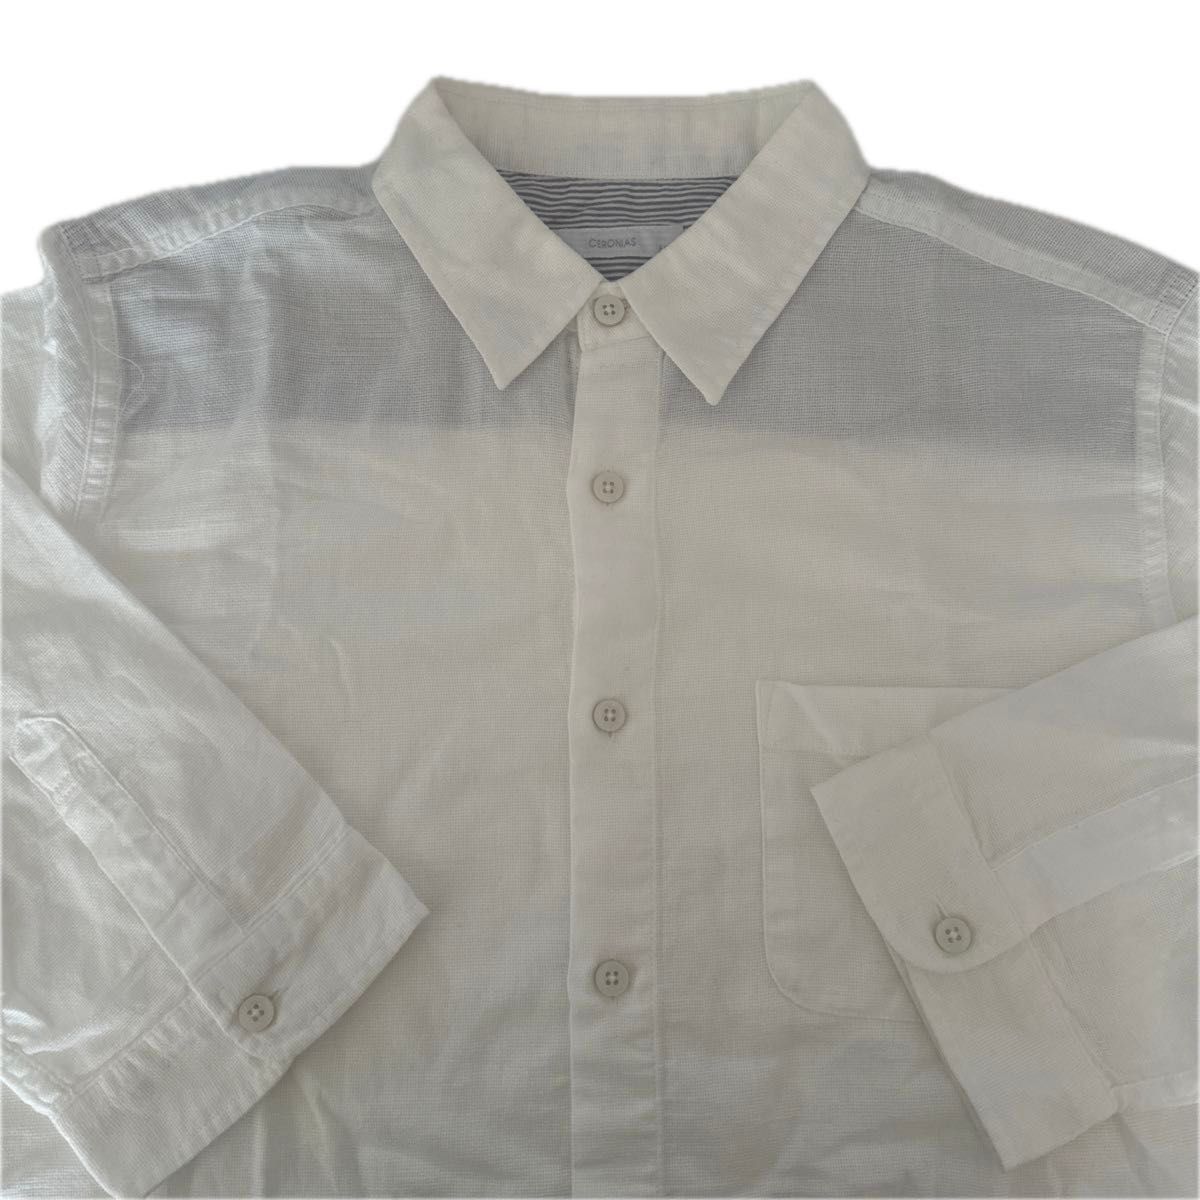 CERONIAS セロニアス メンズ七分袖綿織ホワイトシャツ USED M 美品 ホワイト